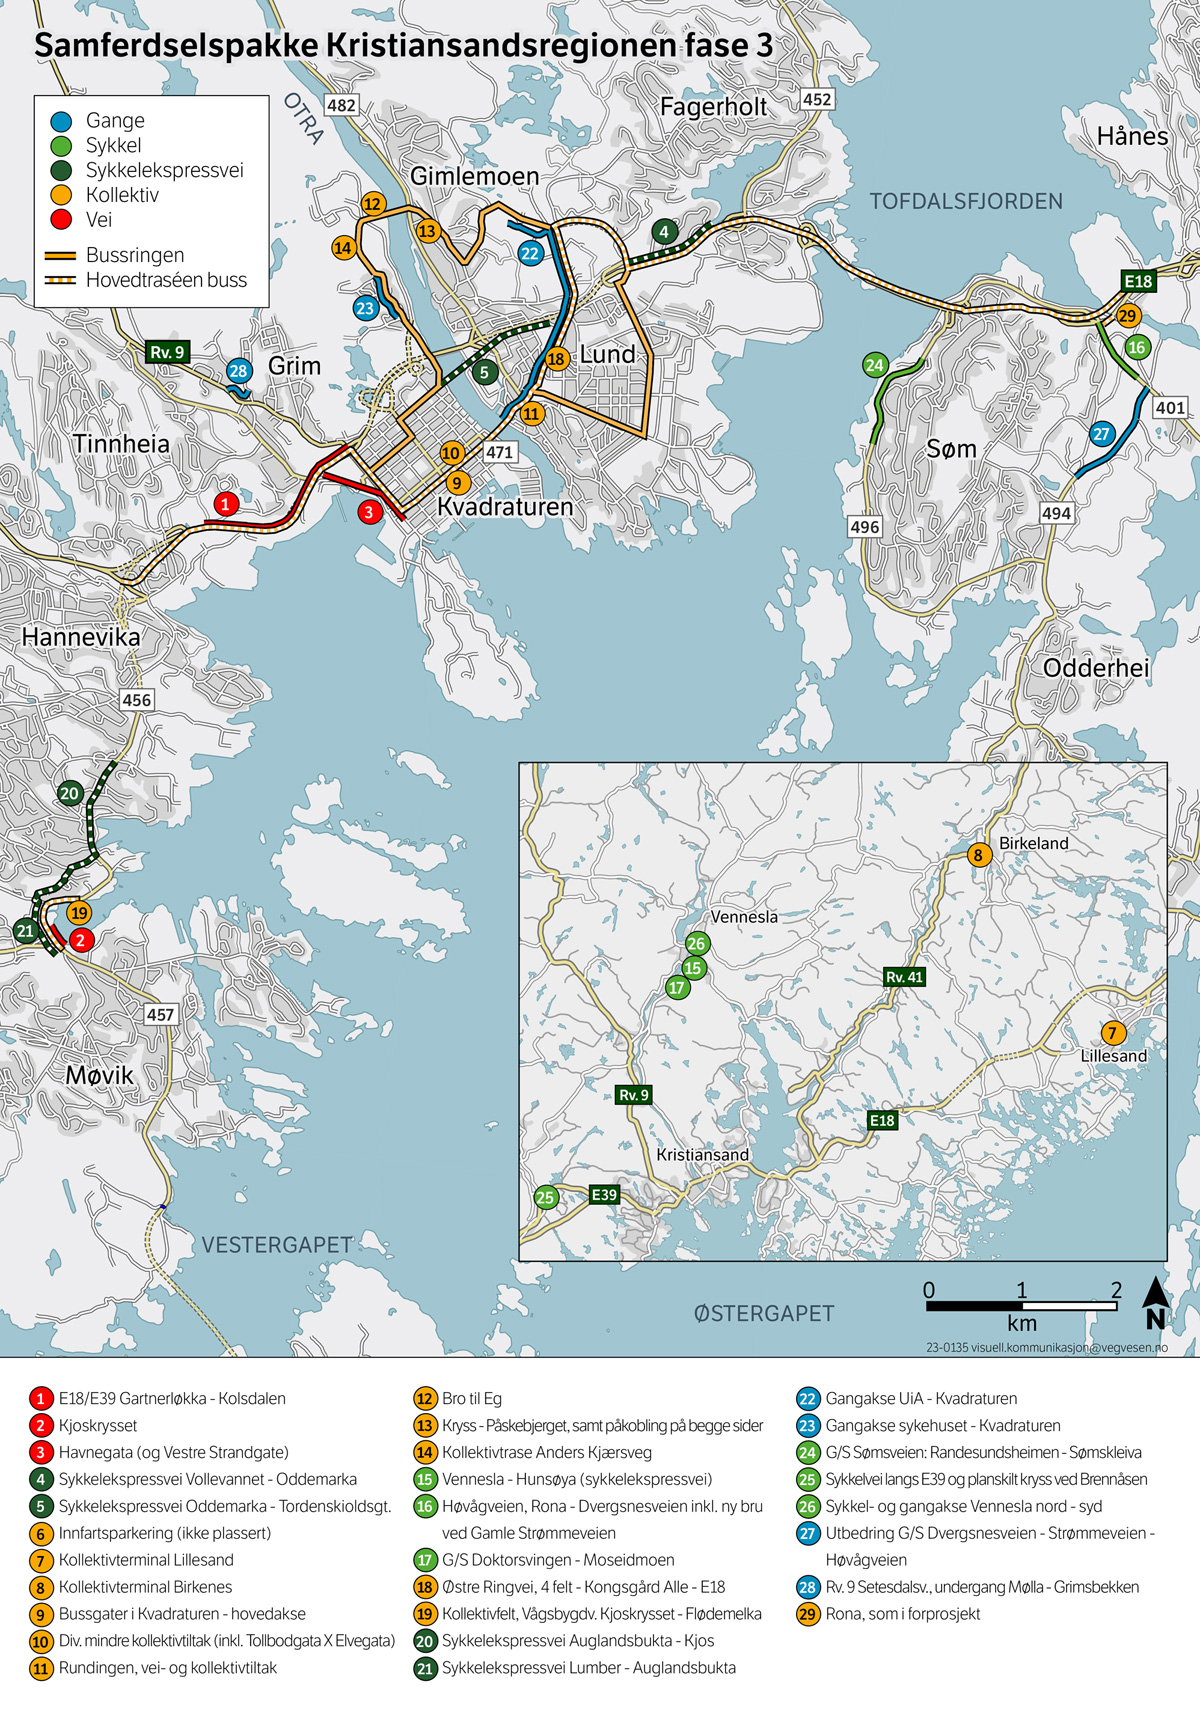 Figur 4.1 Prioriterte prosjekter og tiltak i Samferdselspakke for Kristiansandsregionen fase 3